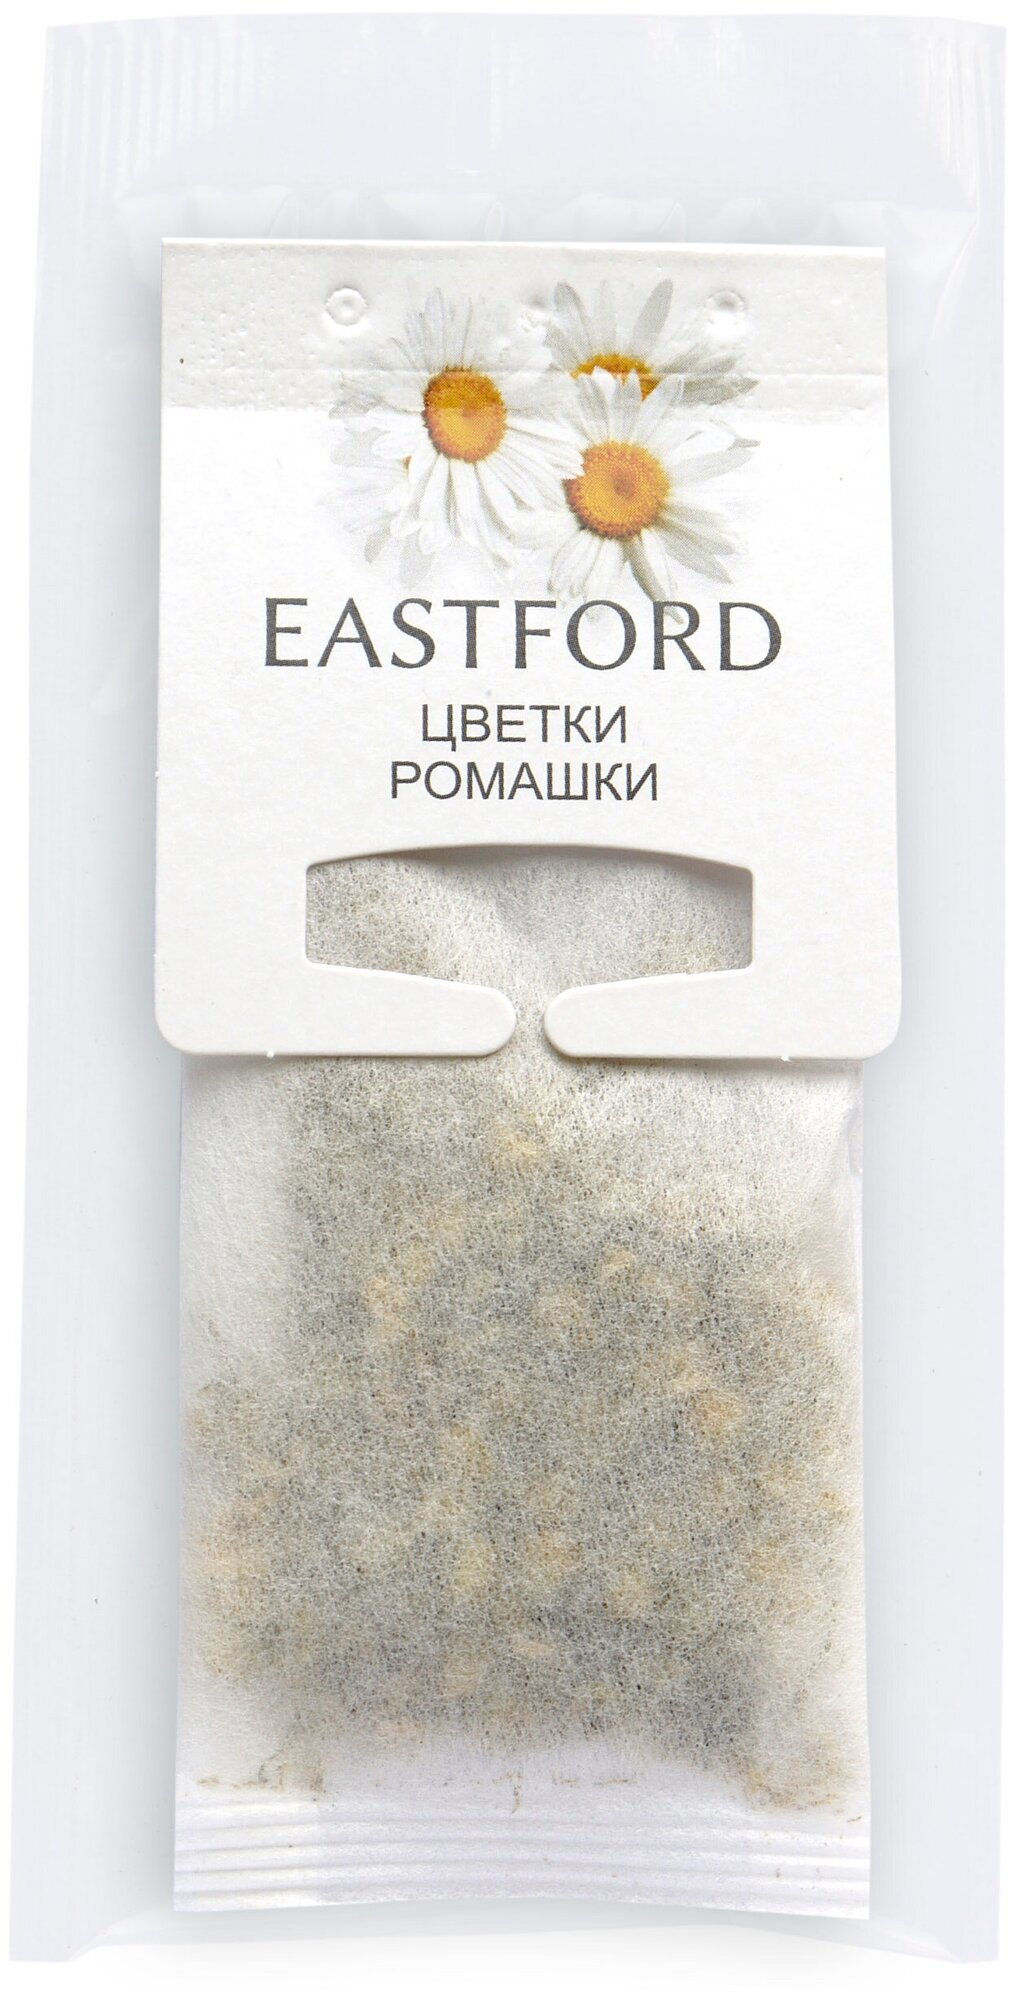 Чай EASTFORD Цветки ромашки в больших макси фильтр-пакетах - фотография № 4